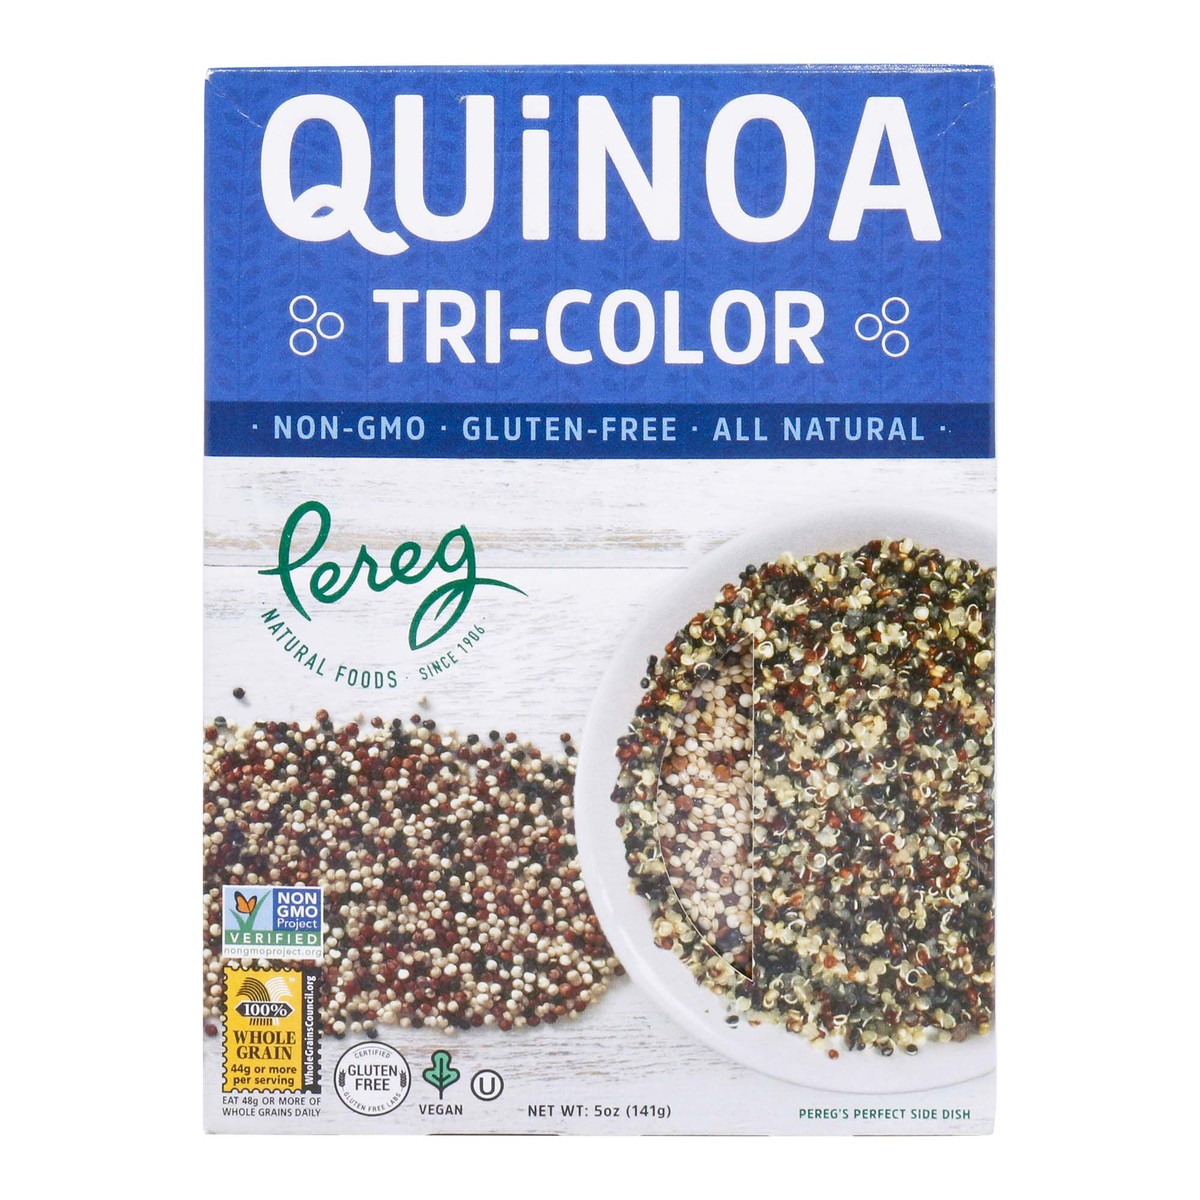 Pereg Tri-Color Quinoa 141g Online at Best Price | Pulses | Lulu UAE